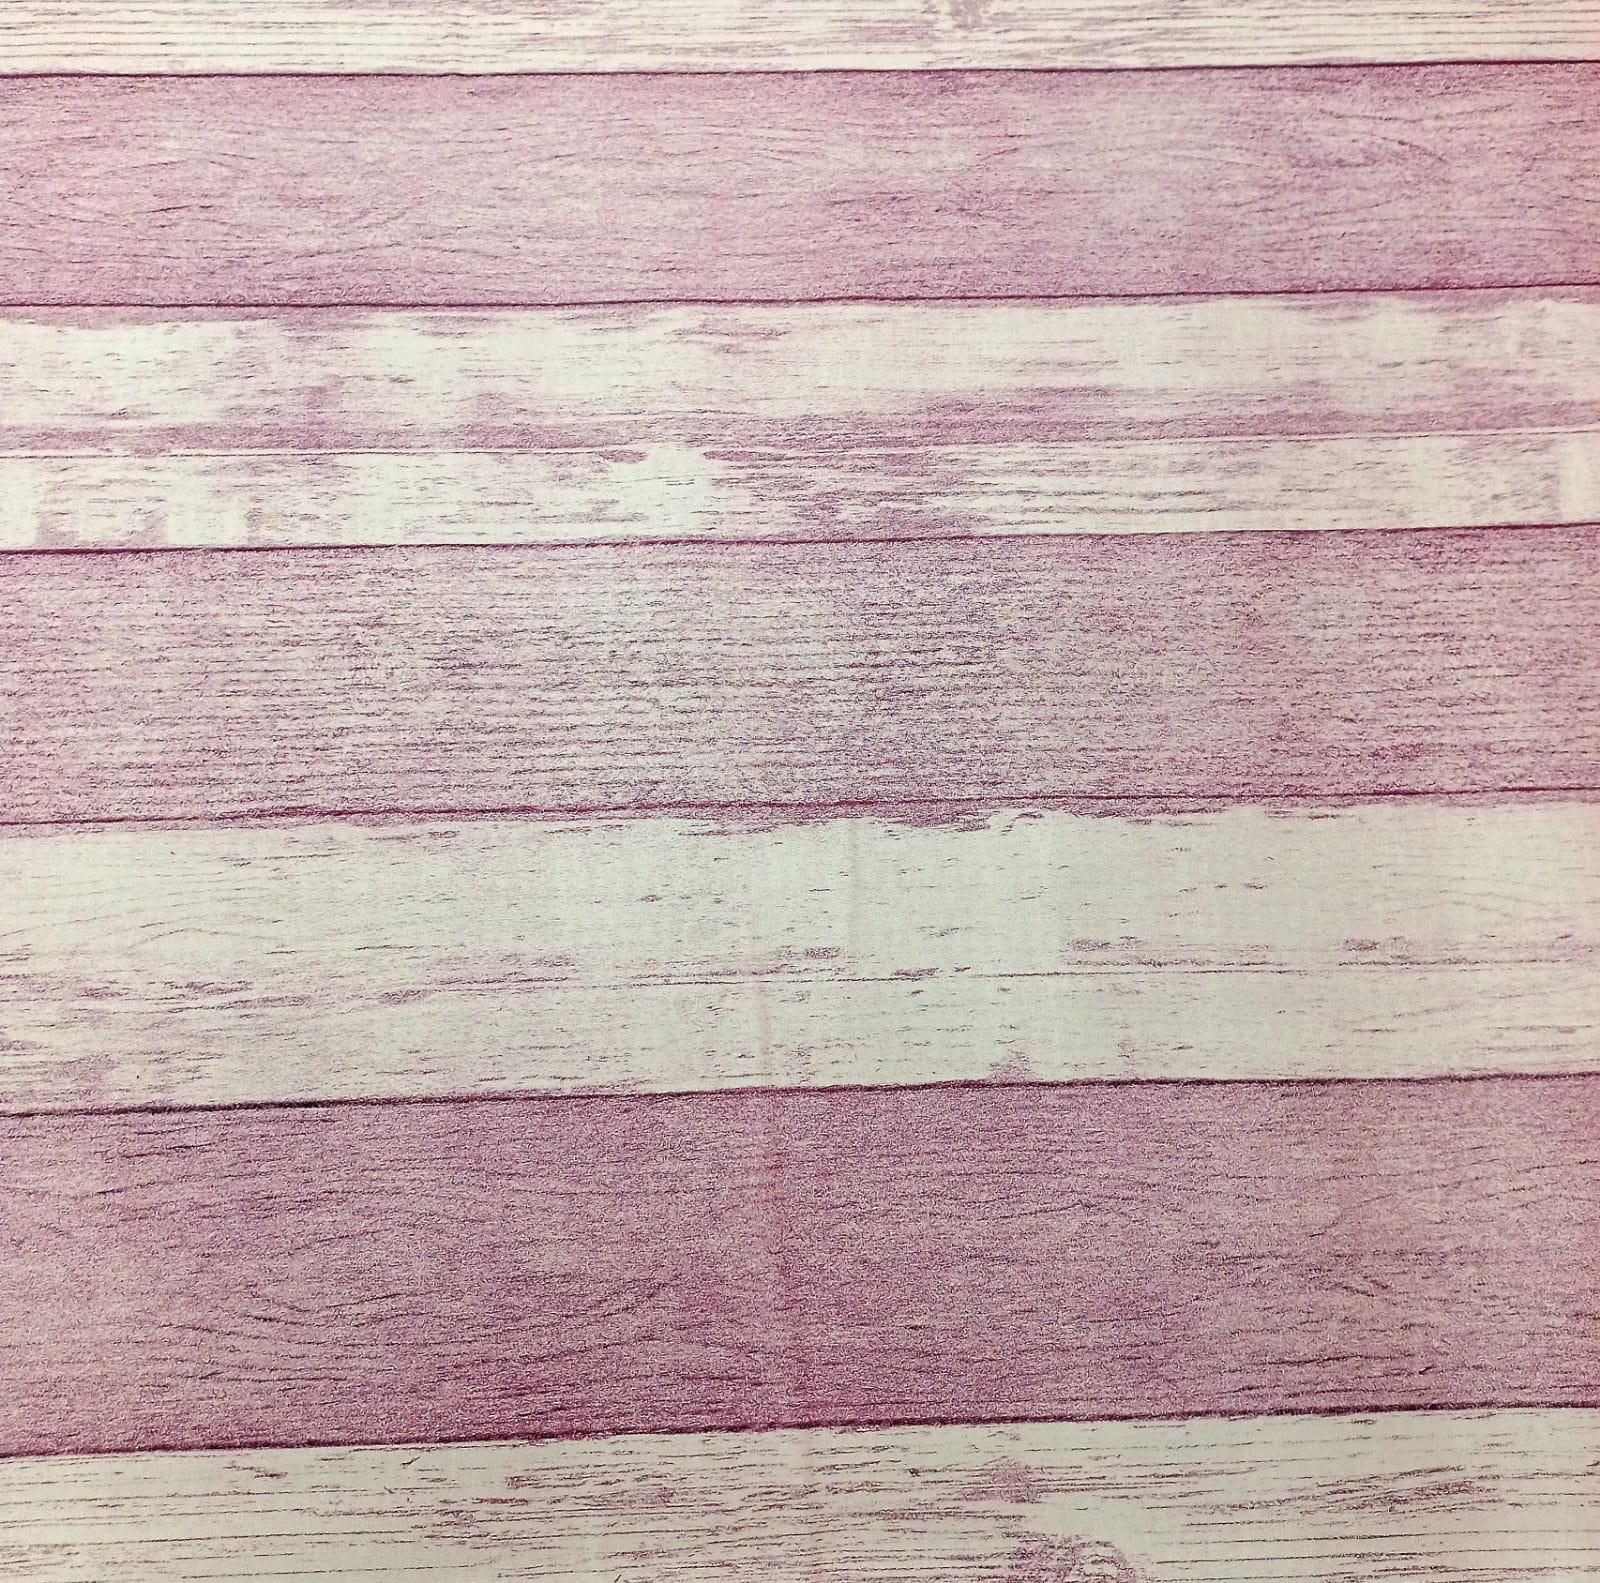 Papel de Parede Amadeirado Rosa 0,45 Cm x 5 Mt